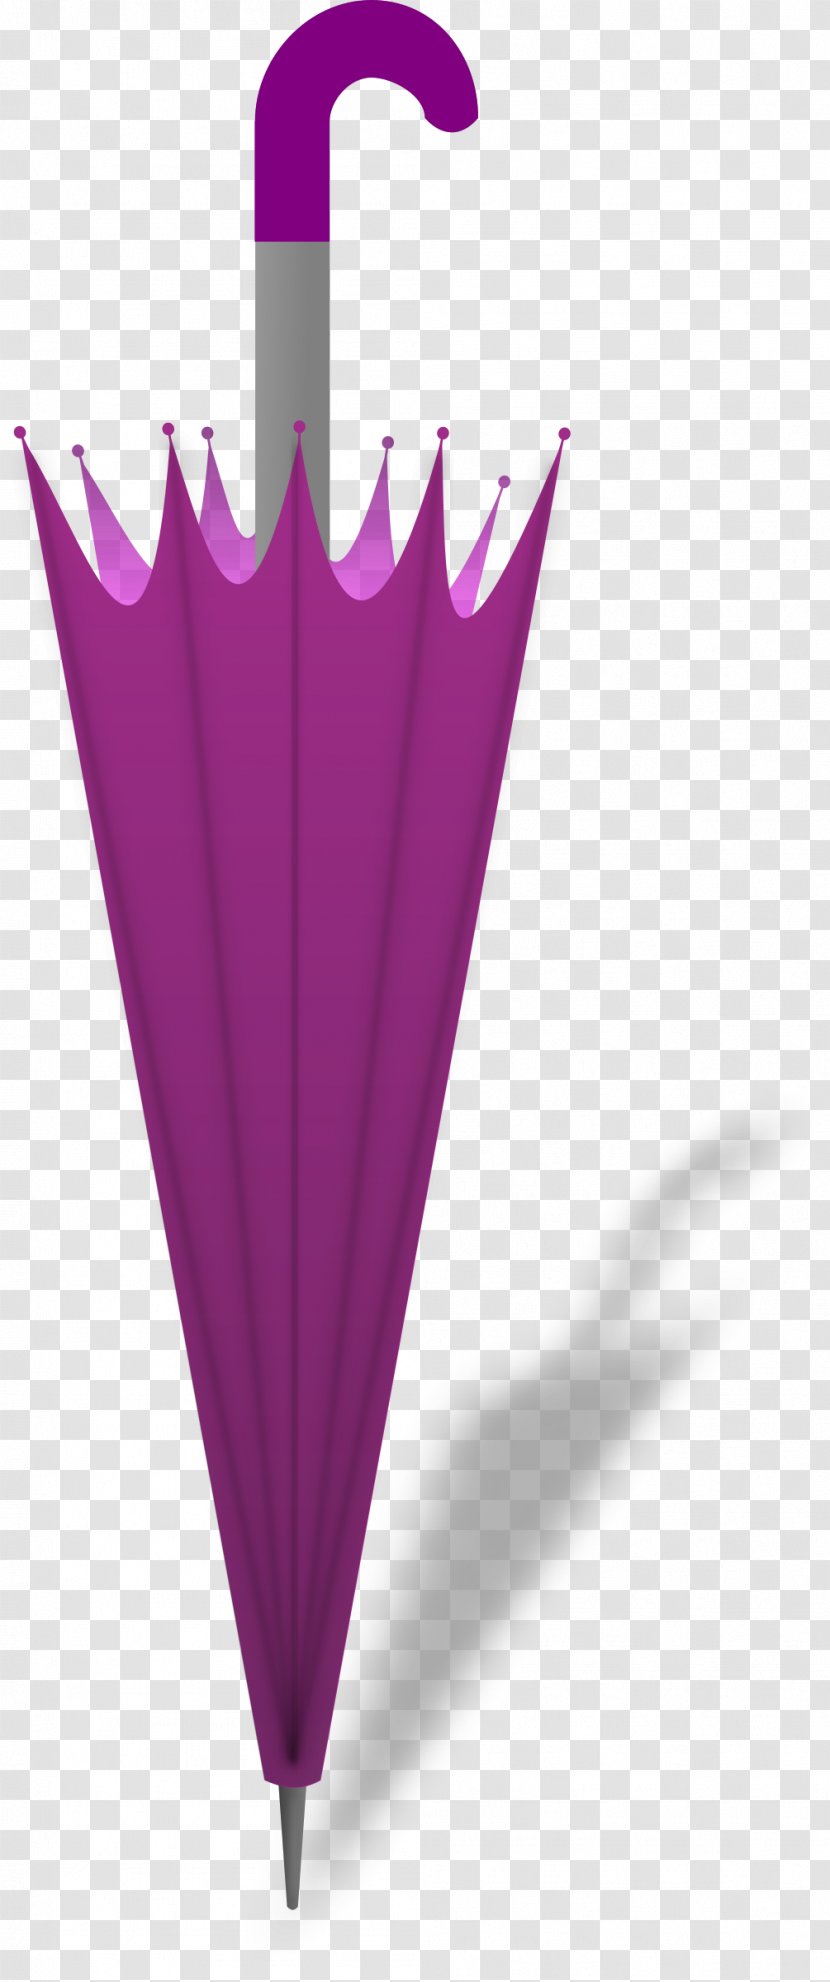 Umbrella Public Domain Clip Art - Purple - Parasol Transparent PNG